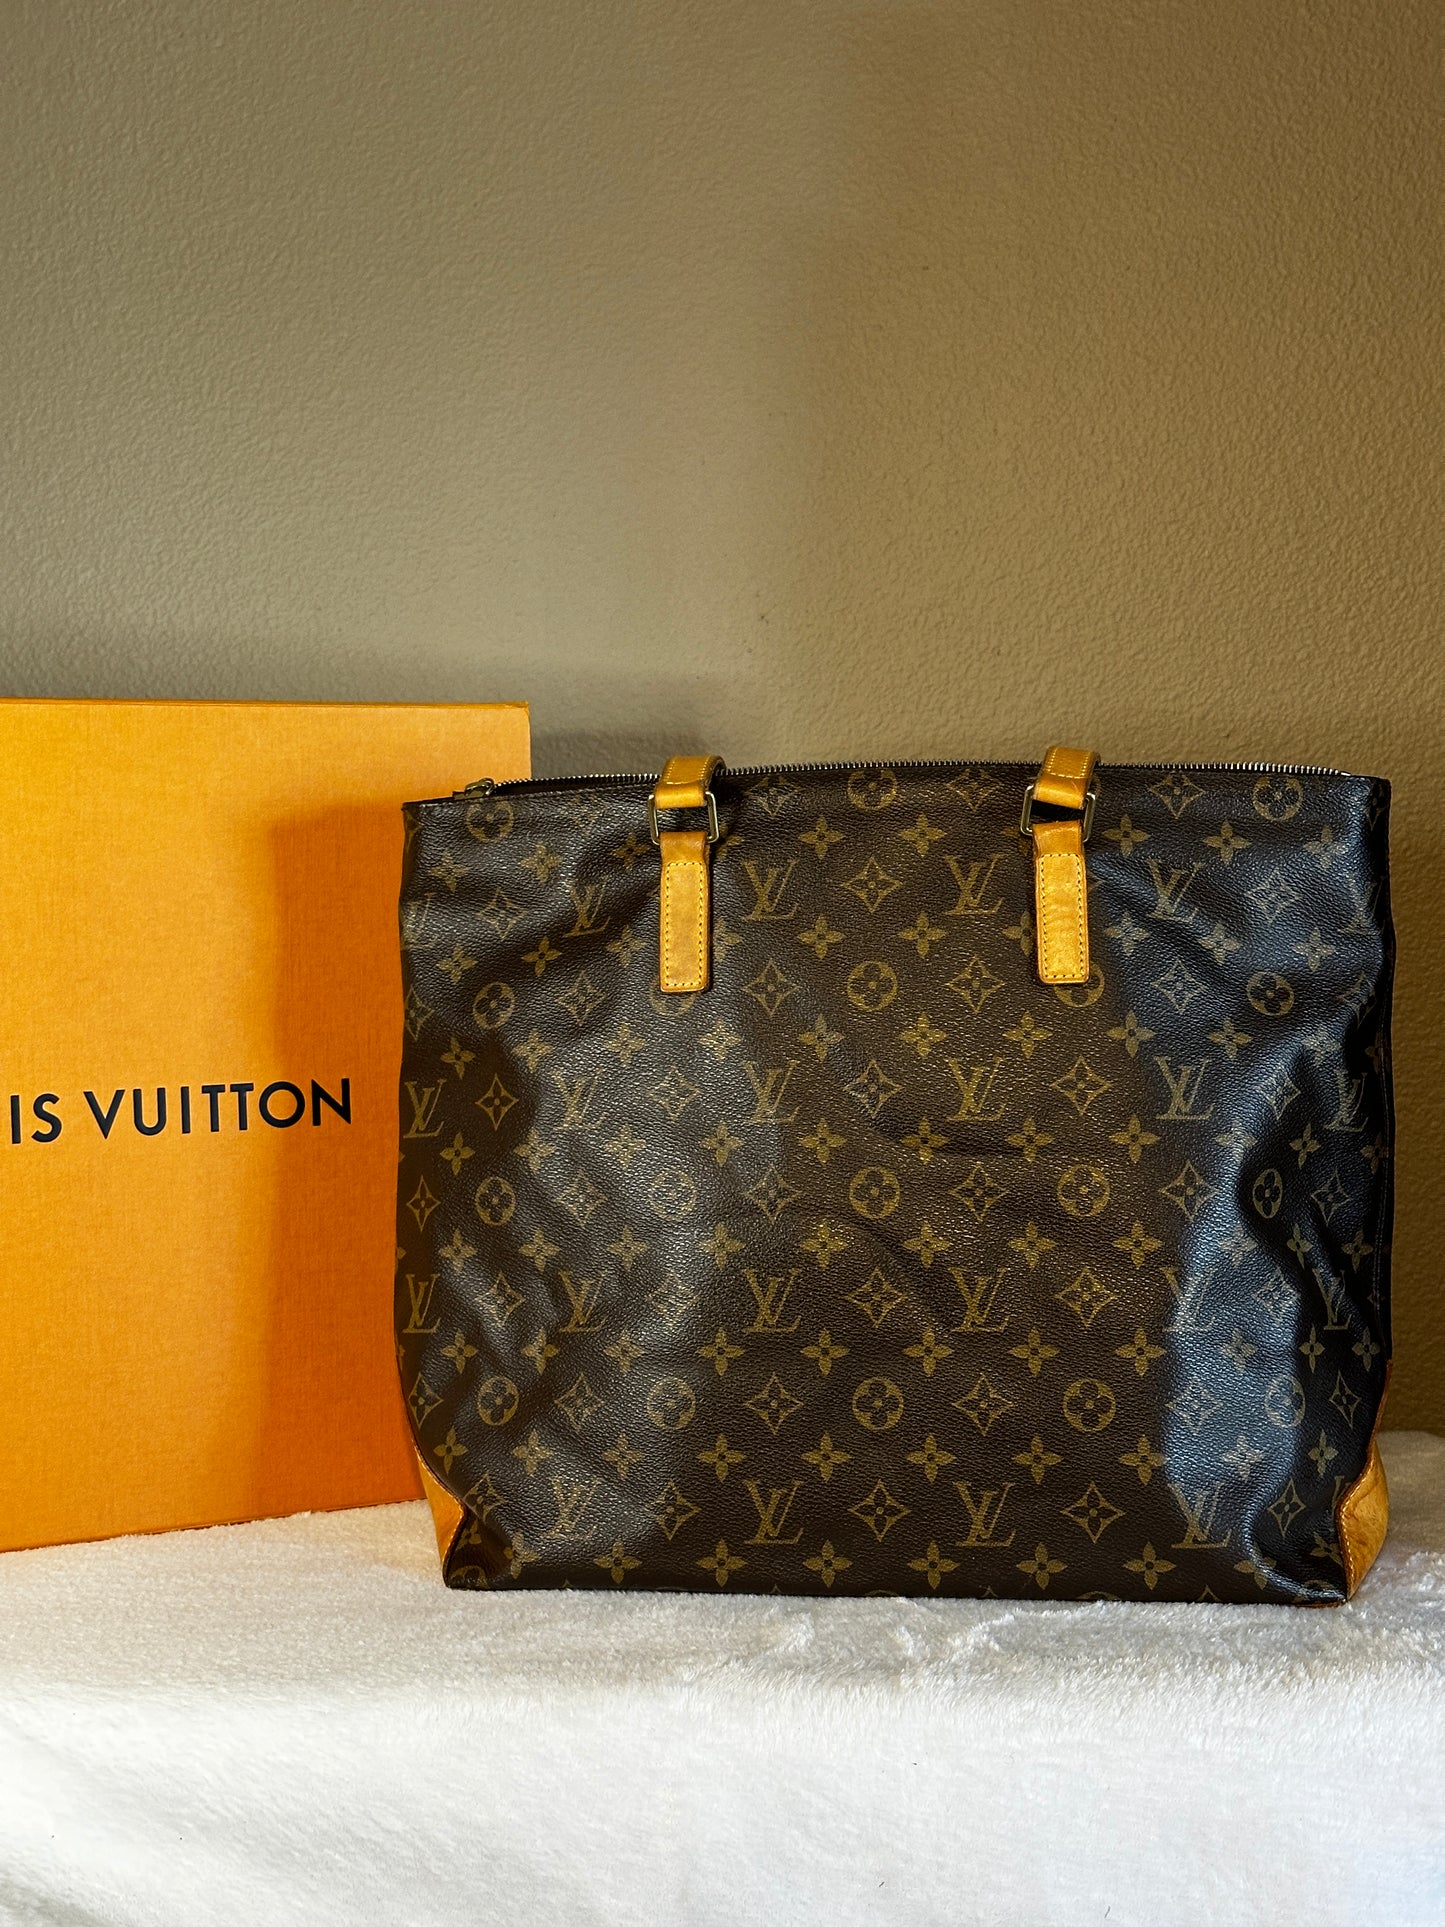 Authentic Louis Vuitton Monogram Cabas Mezzo Handbag